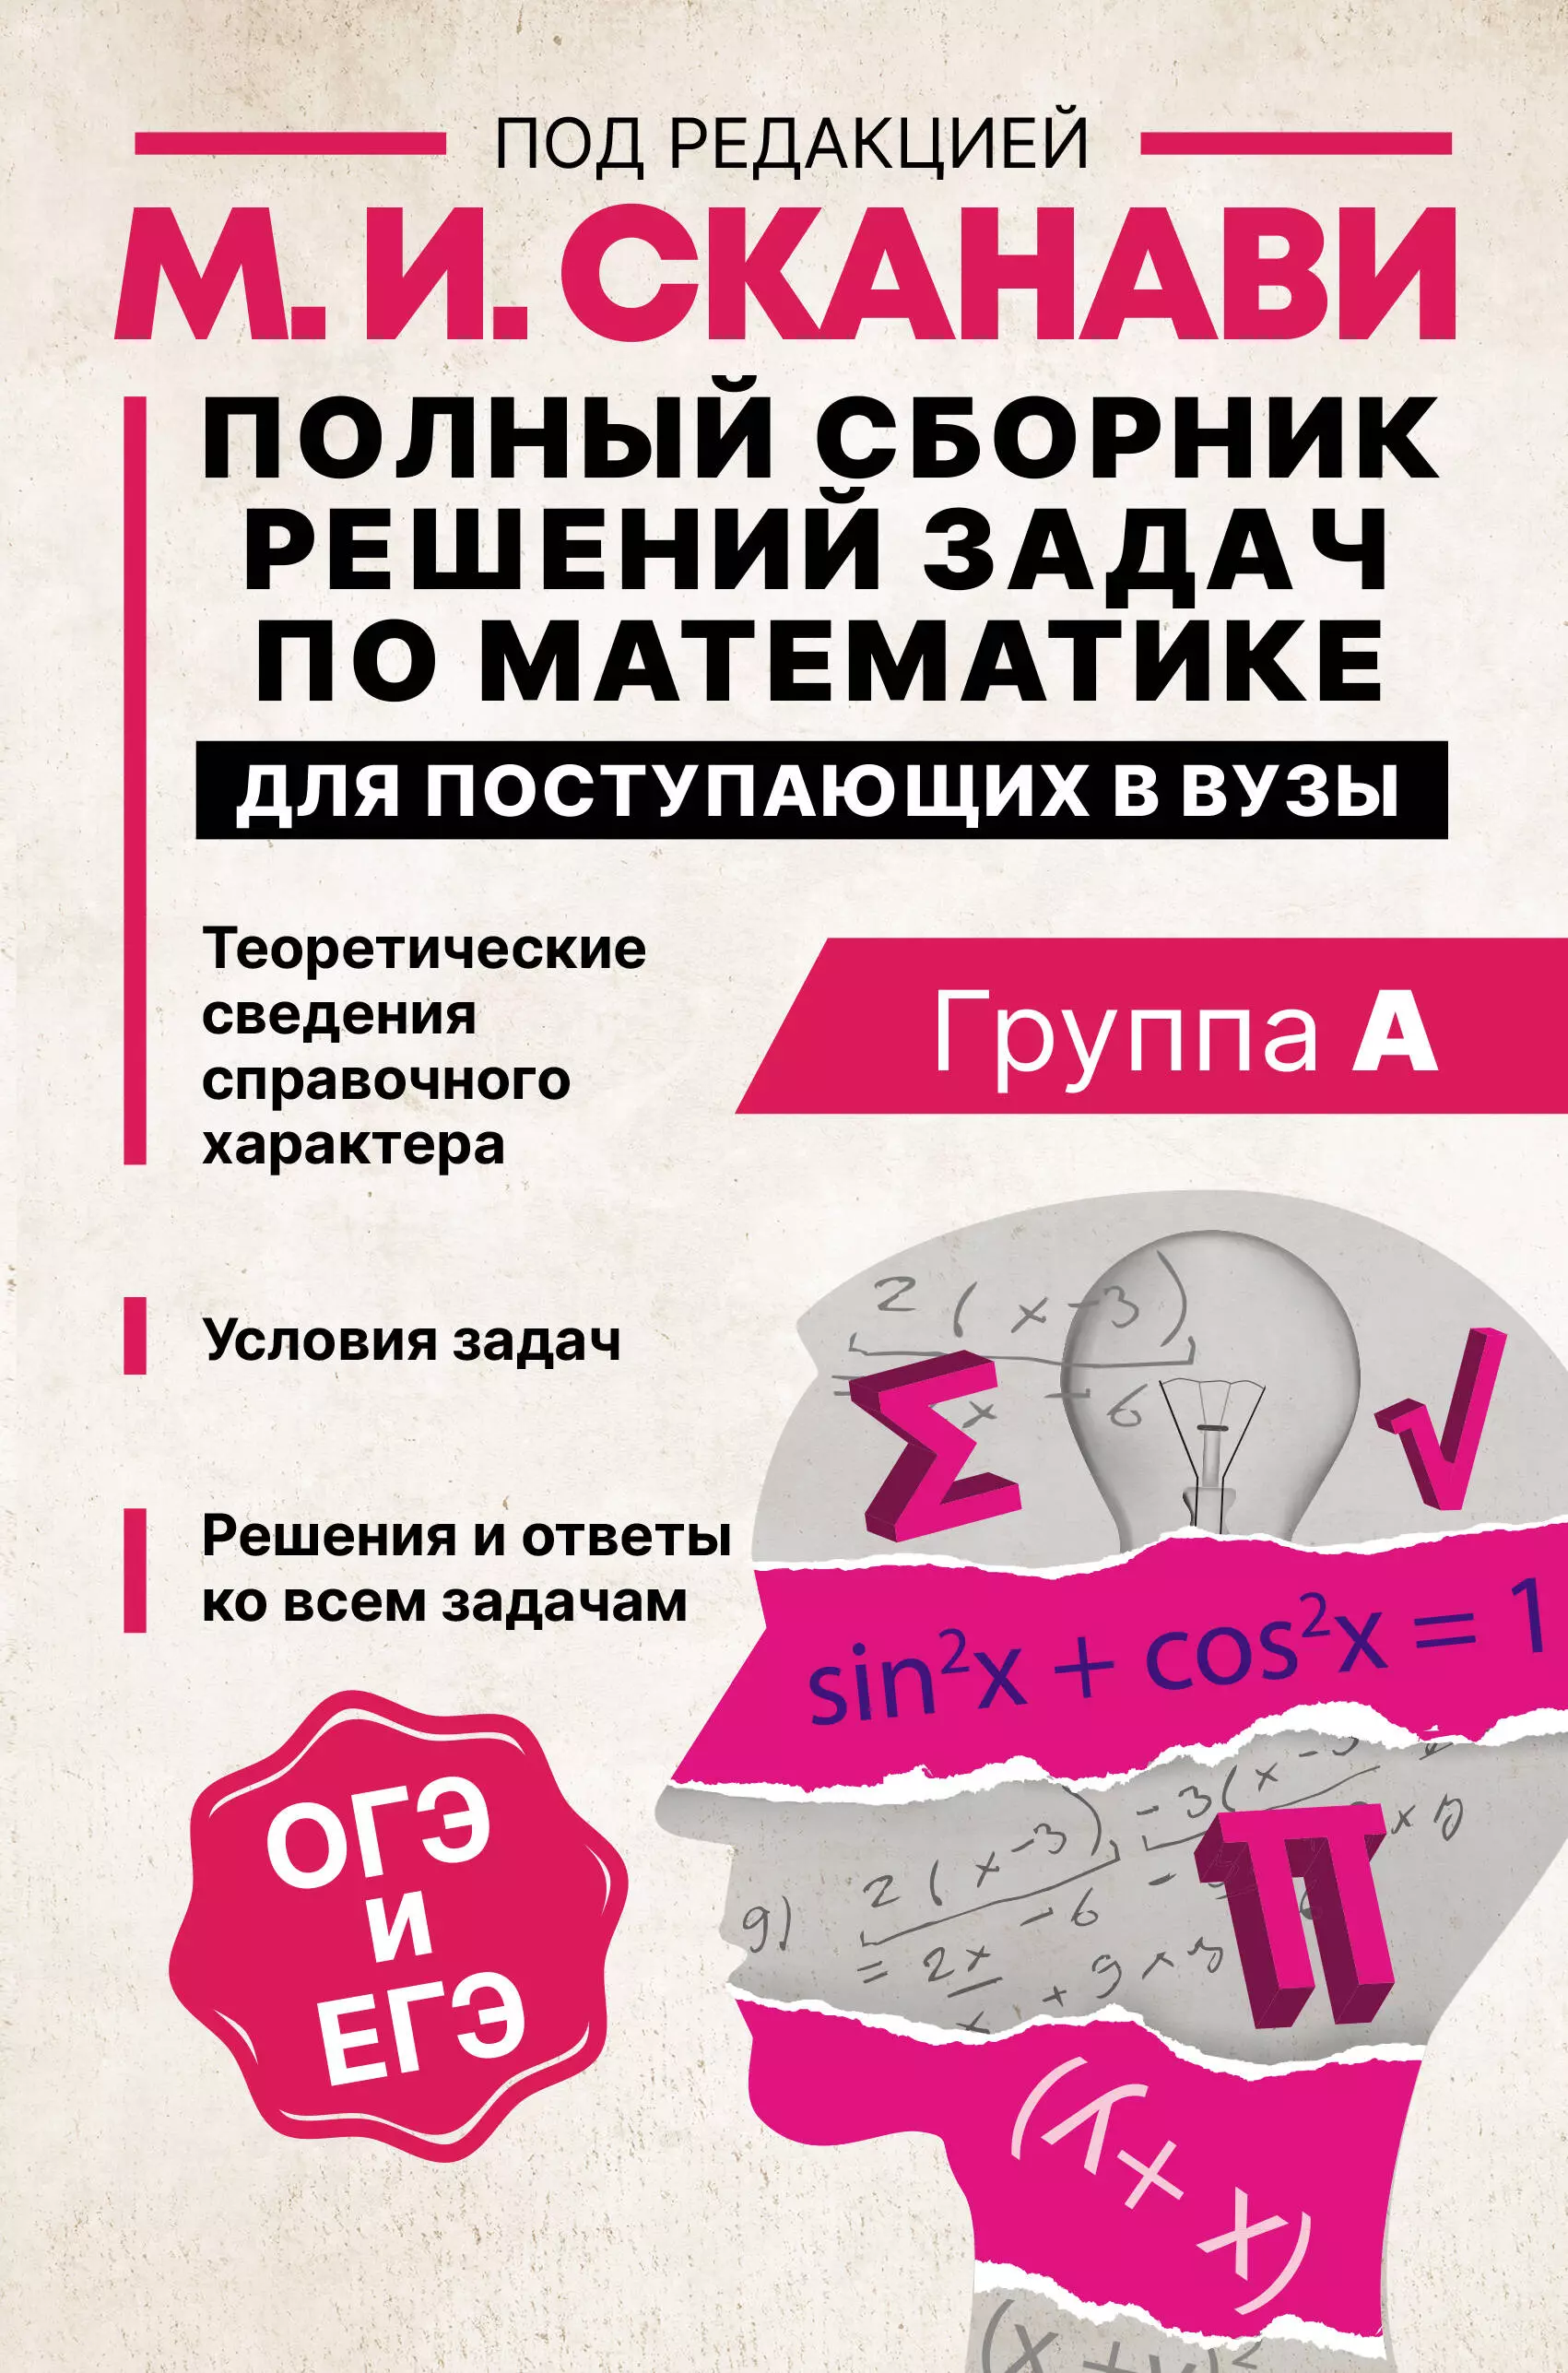 Сканави Марк Иванович - Полный сборник решений задач по математике для поступающих в вузы. Группа А